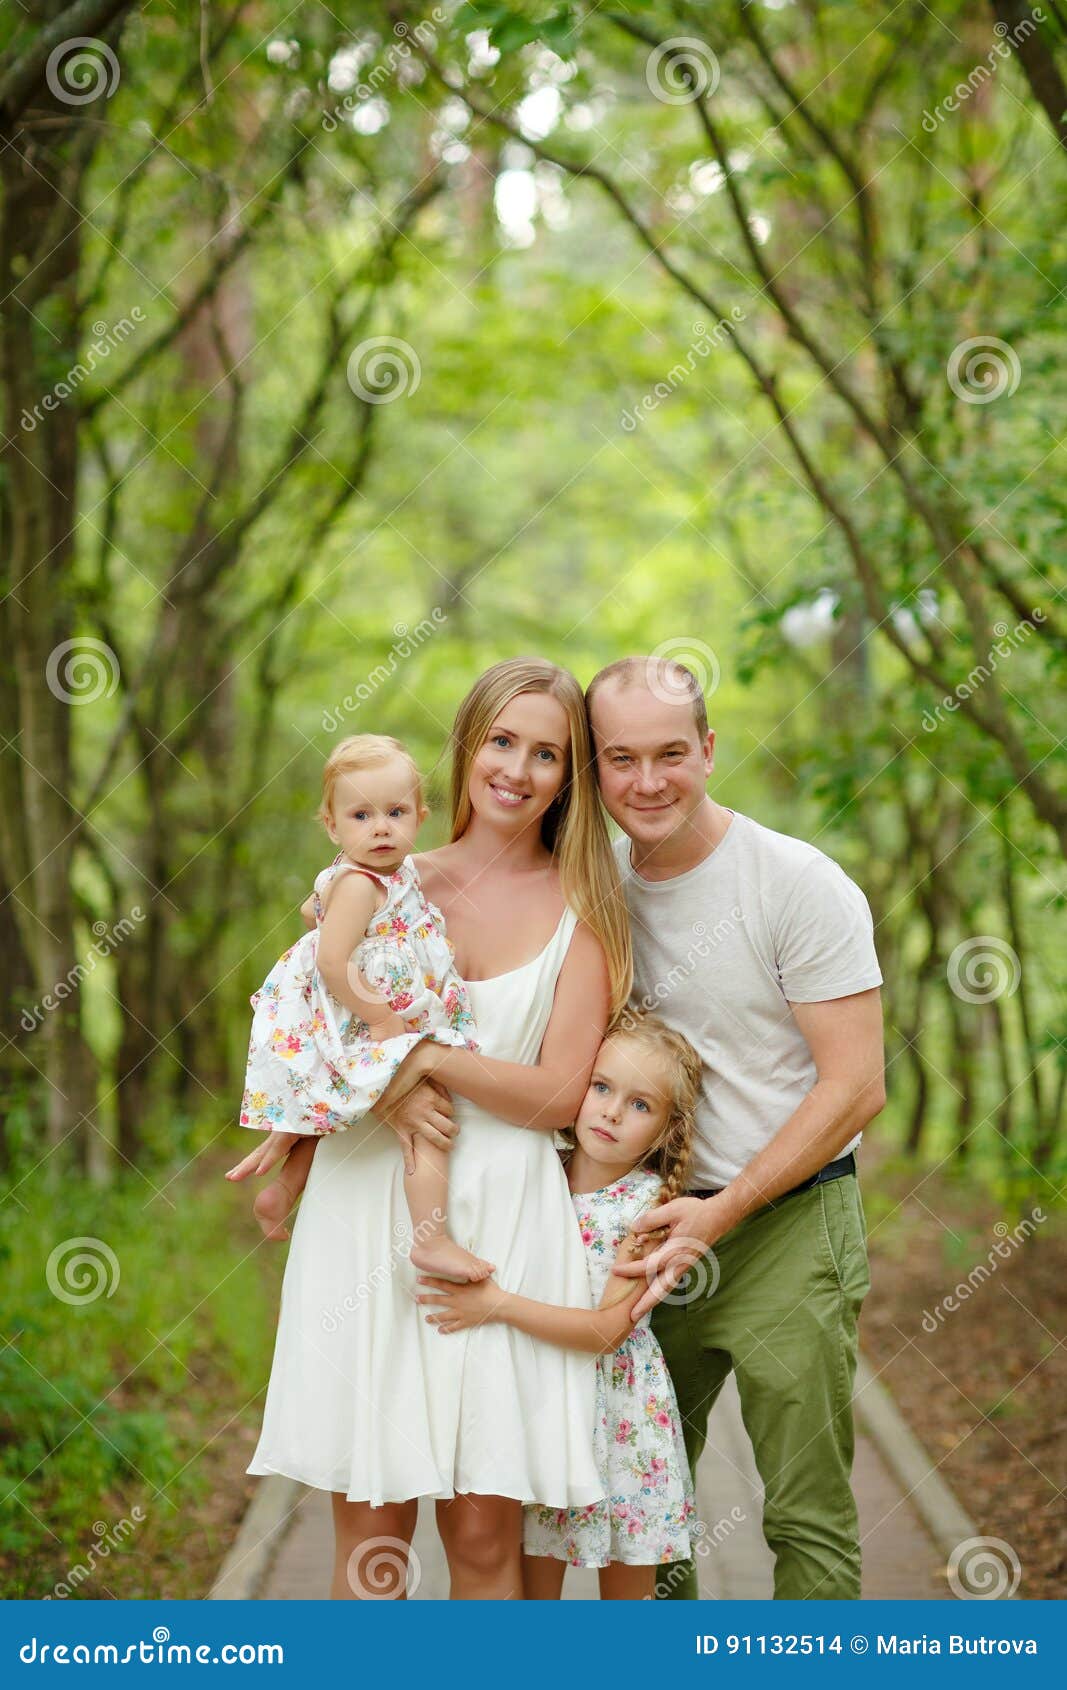 Blonde daughter. Семья с двумя дочками. Семейная фотосессия с двумя дочками. Семья блондинов. Семейная фотосессия папа и мама две дочери.